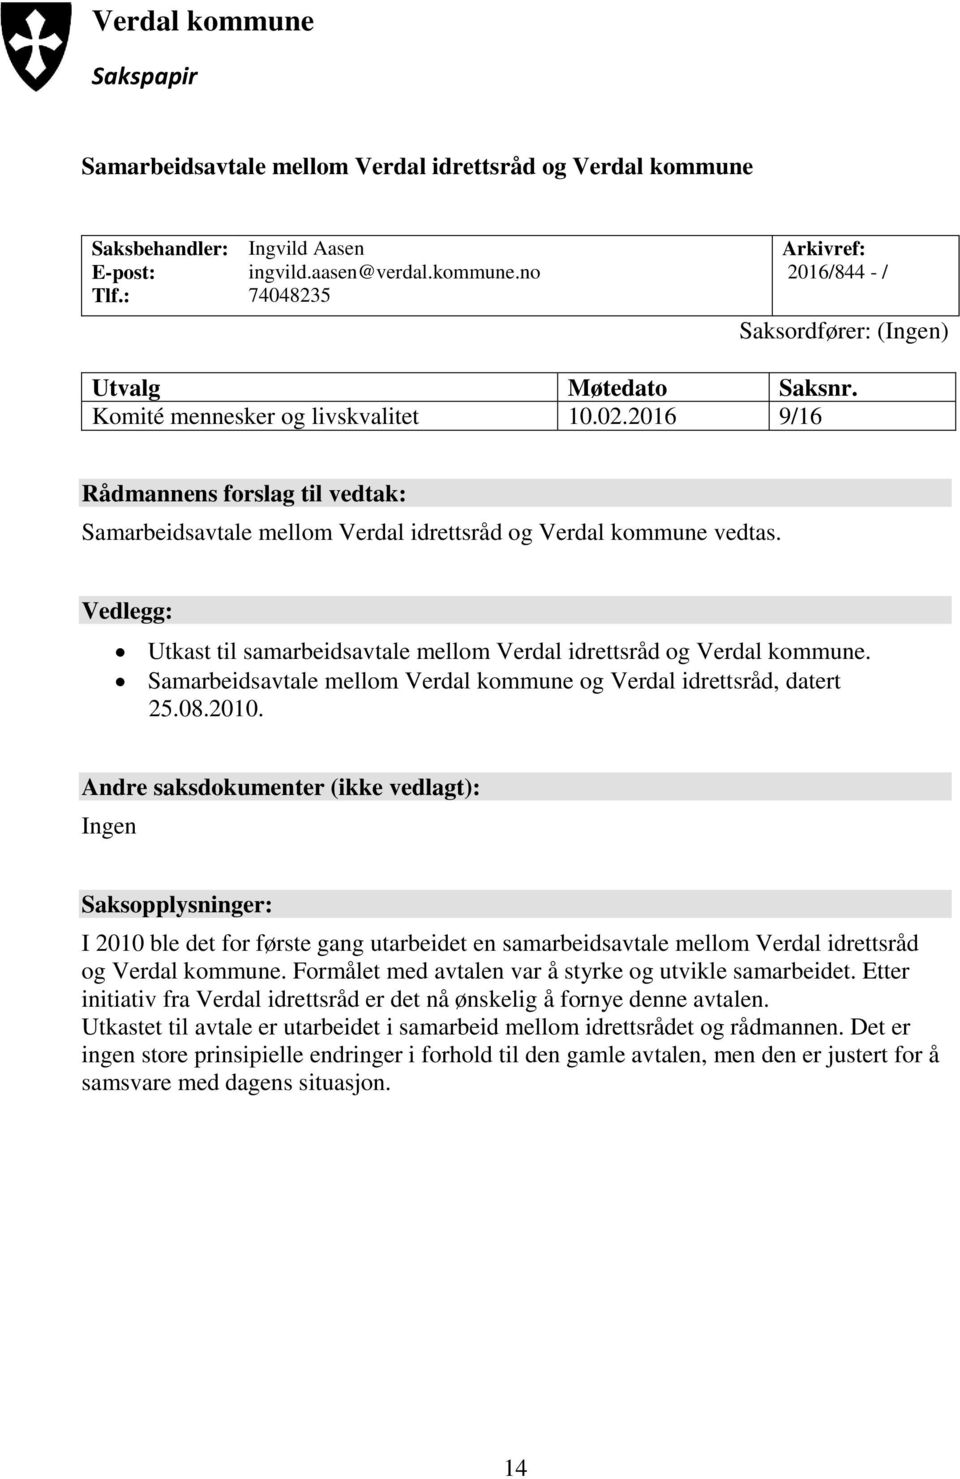 Vedlegg: Utkast til samarbeidsavtale mellom Verdal idrettsråd og Verdal kommune. Samarbeidsavtale mellom Verdal kommune og Verdal idrettsråd, datert 25.08.2010.